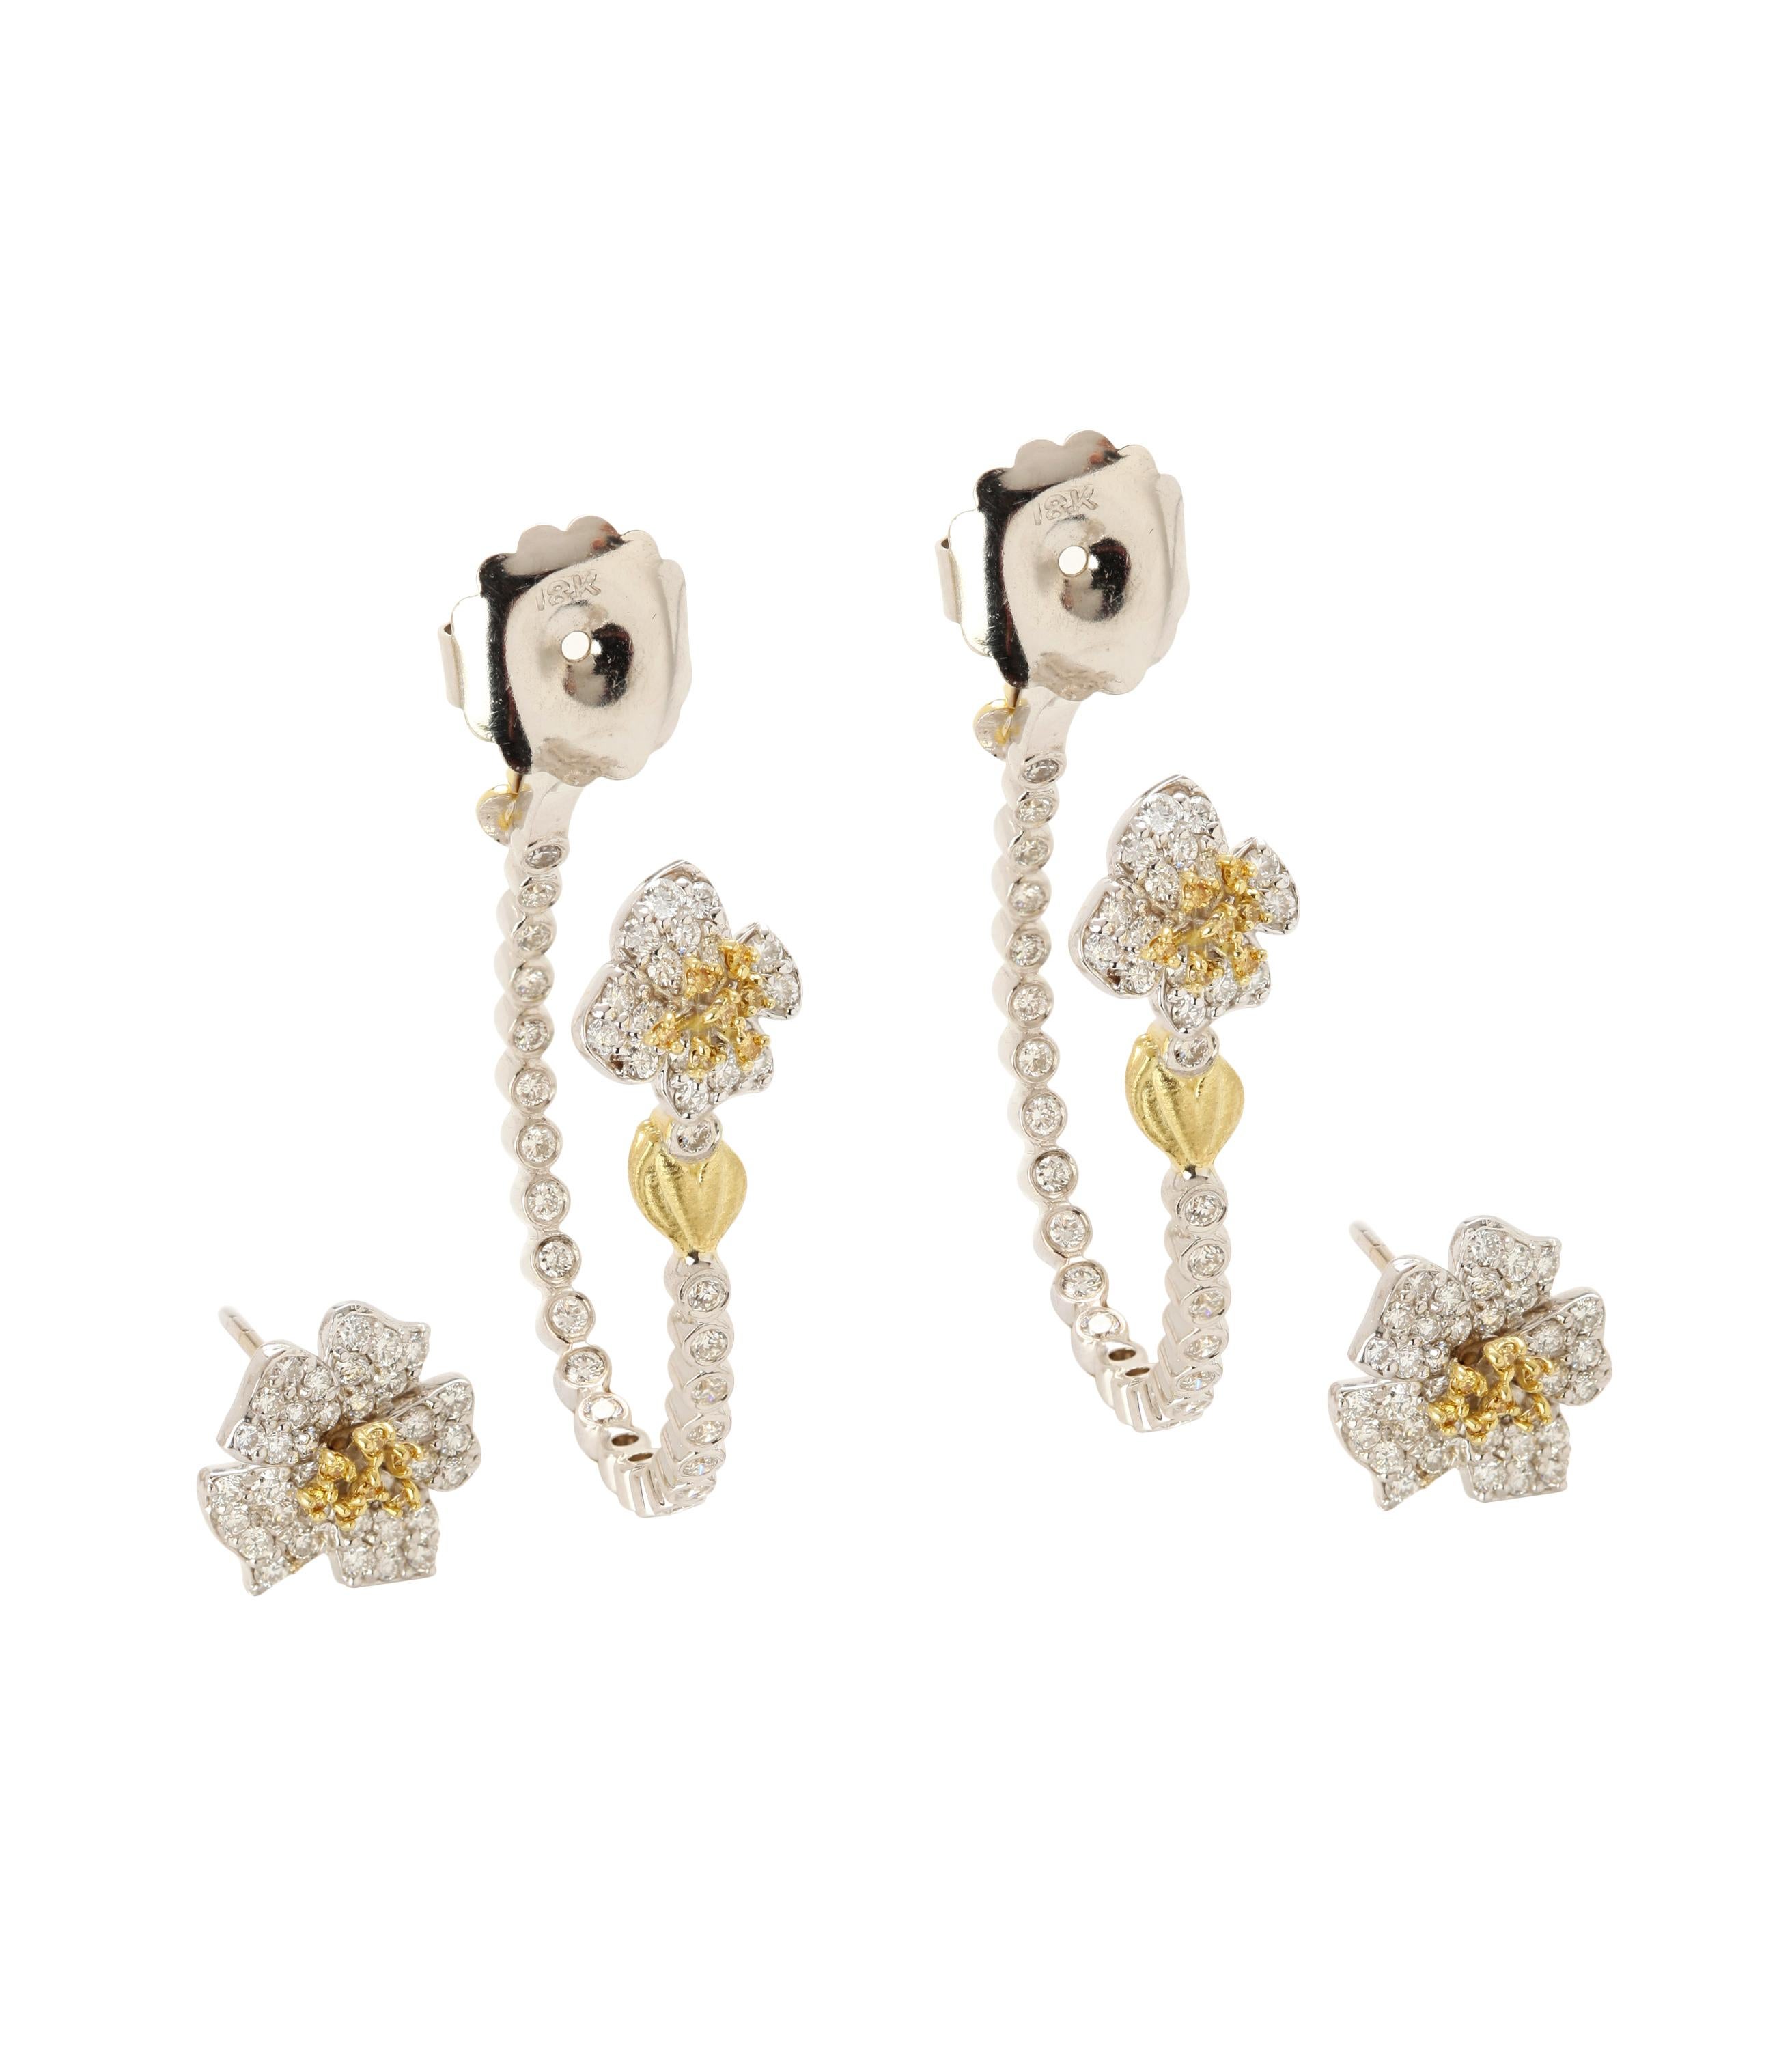 Zweiteilige florale Stambolian-Ohrringe aus 18 Karat weißen und gelben Diamanten mit Blumenmuster

Die Ohrringe sind zweiteilig, d.h. die Blume mit den gelben und weißen Diamanten wird von vorne getragen, während der Rest der Ohrringe von hinten